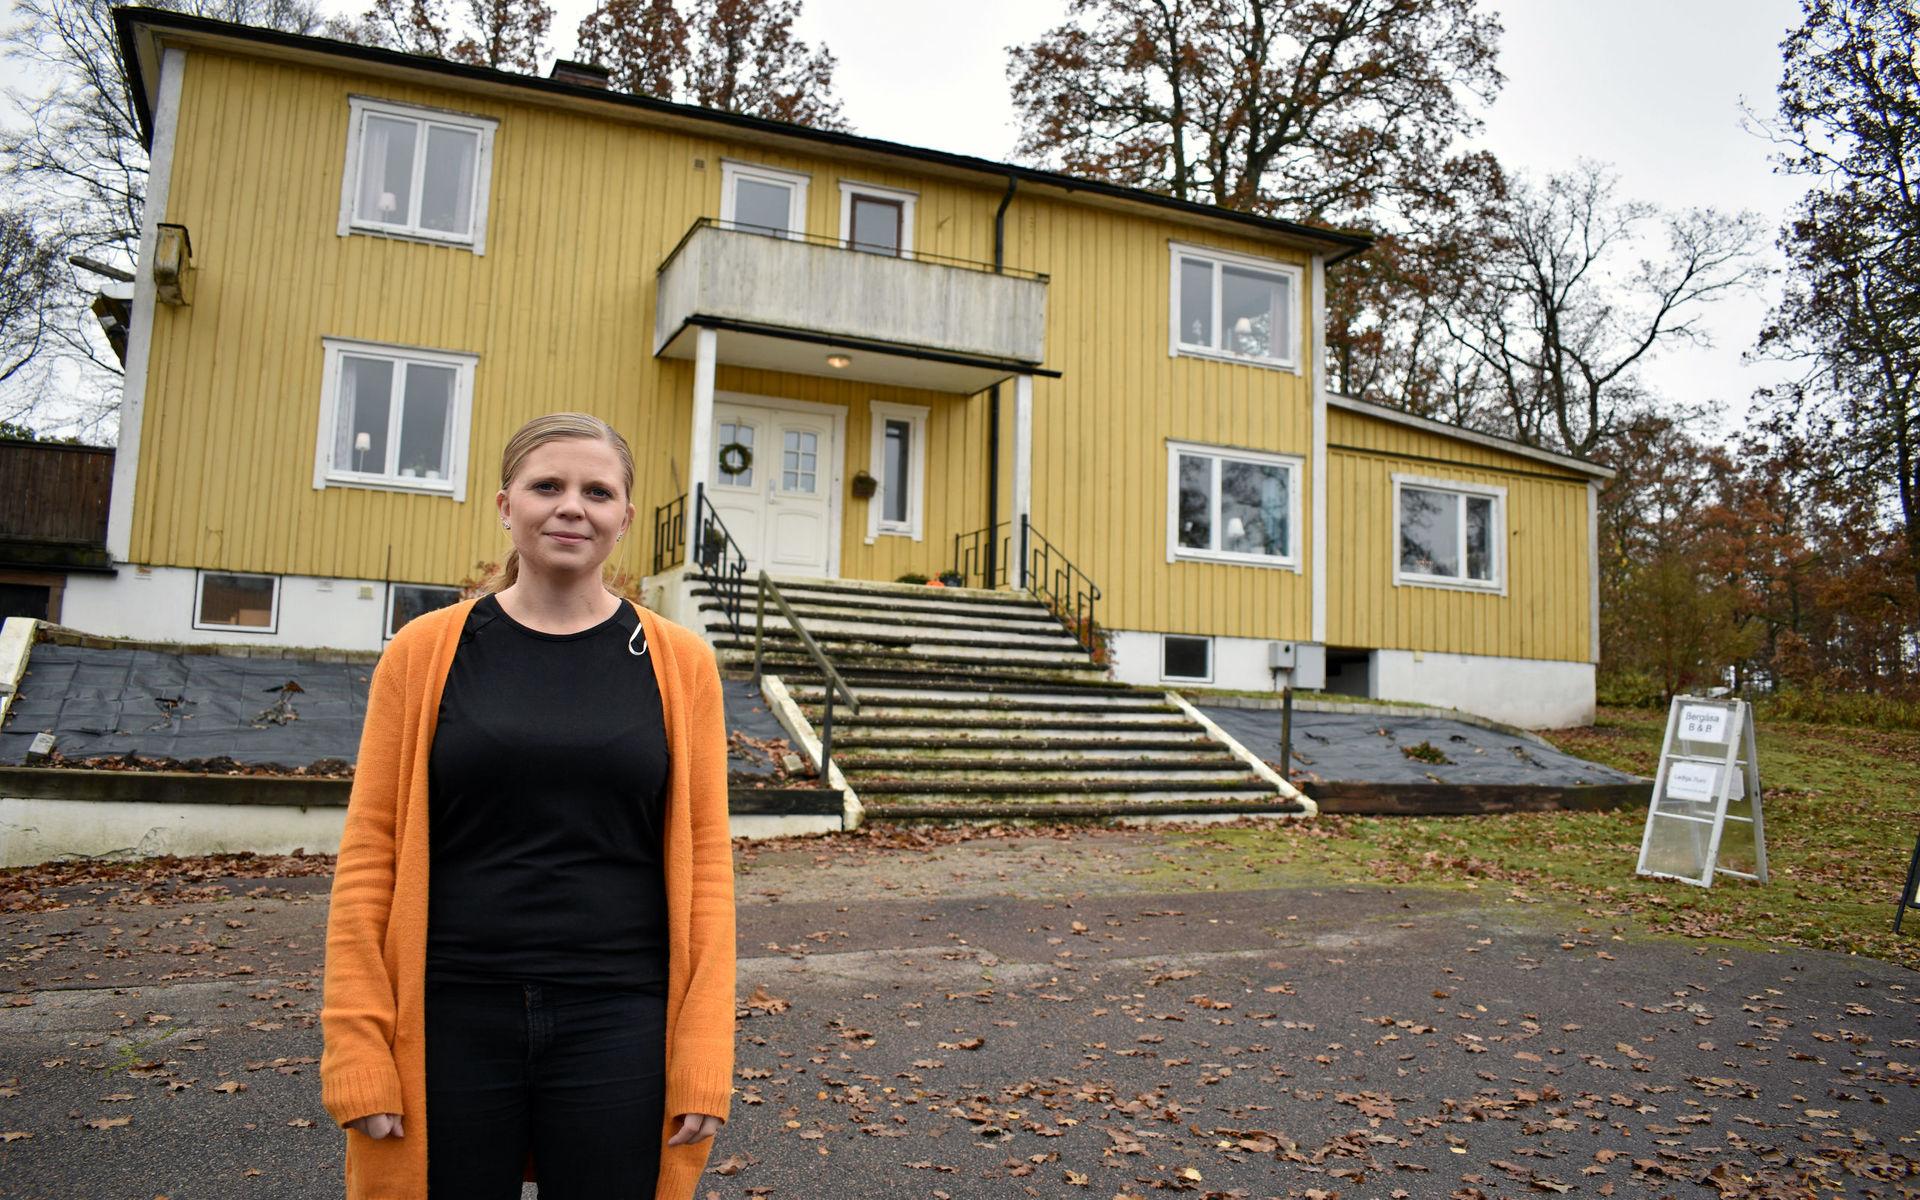 Med utsikt över Drängsjön bygger Louise Jacobsson upp en helt ny verksamhet i Drängsereds gamla värdshus. Att starta sitt eget bed and breakfast är inte helt enkelt, men Louise tar arbetet steg för steg.